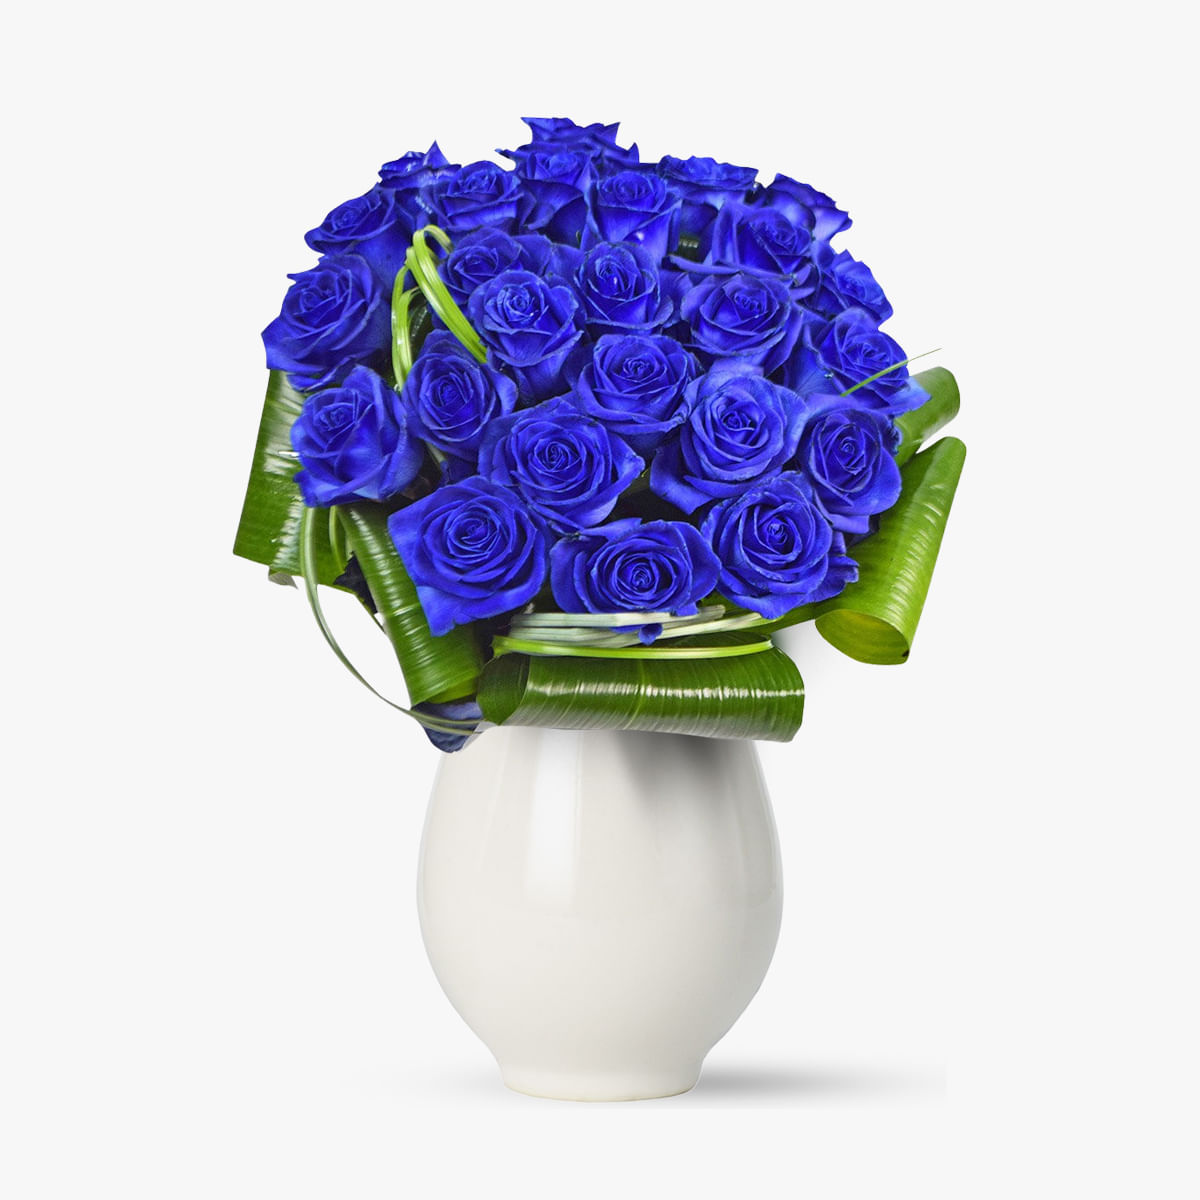 Buchet de 25 trandafiri albastri – Standard albastri